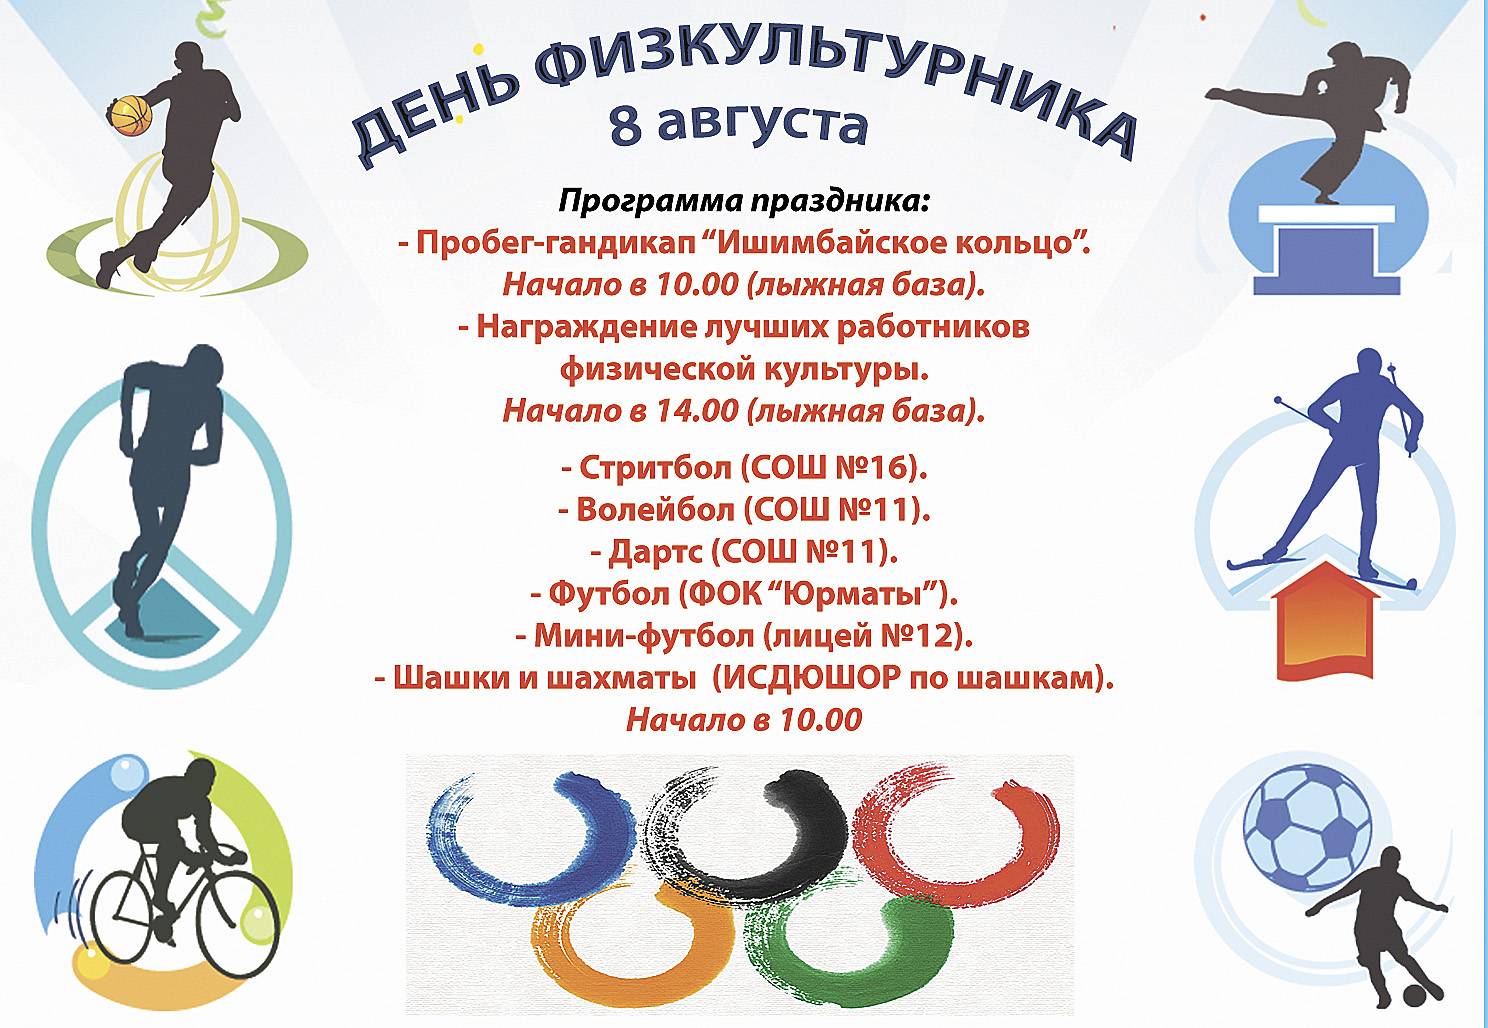 Спортивный праздник день физкультурника в россии будут отмечать 10 августа, поздравления в прозе - "слово без границ" - новости россии и мира сегодня